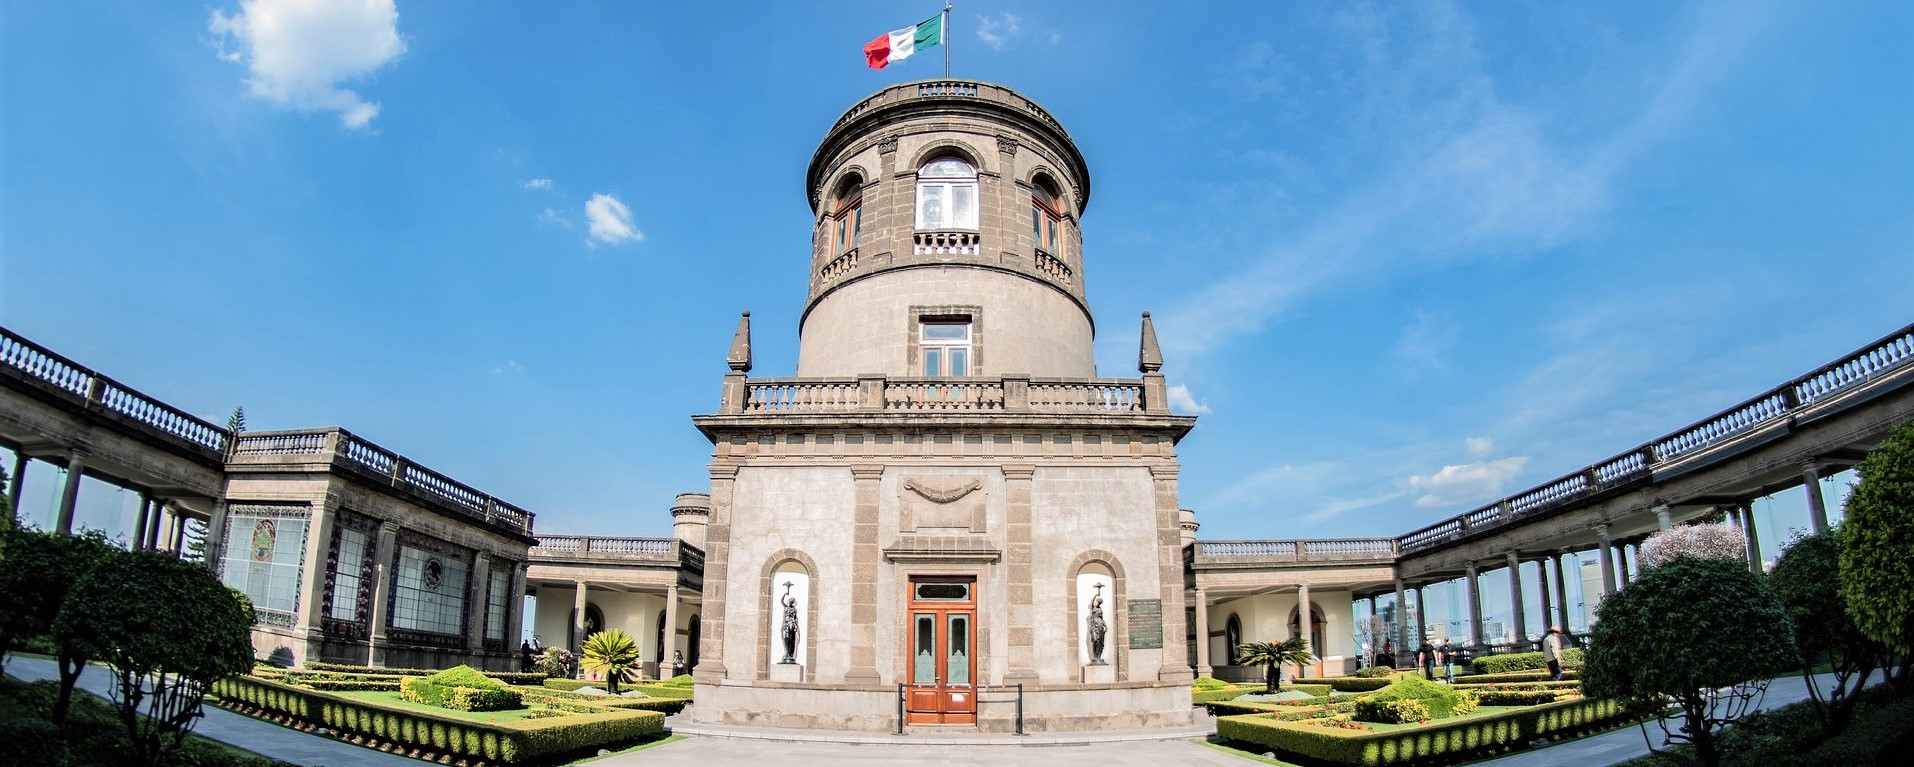 Château de Chapultepec, Mexico City, Mexique